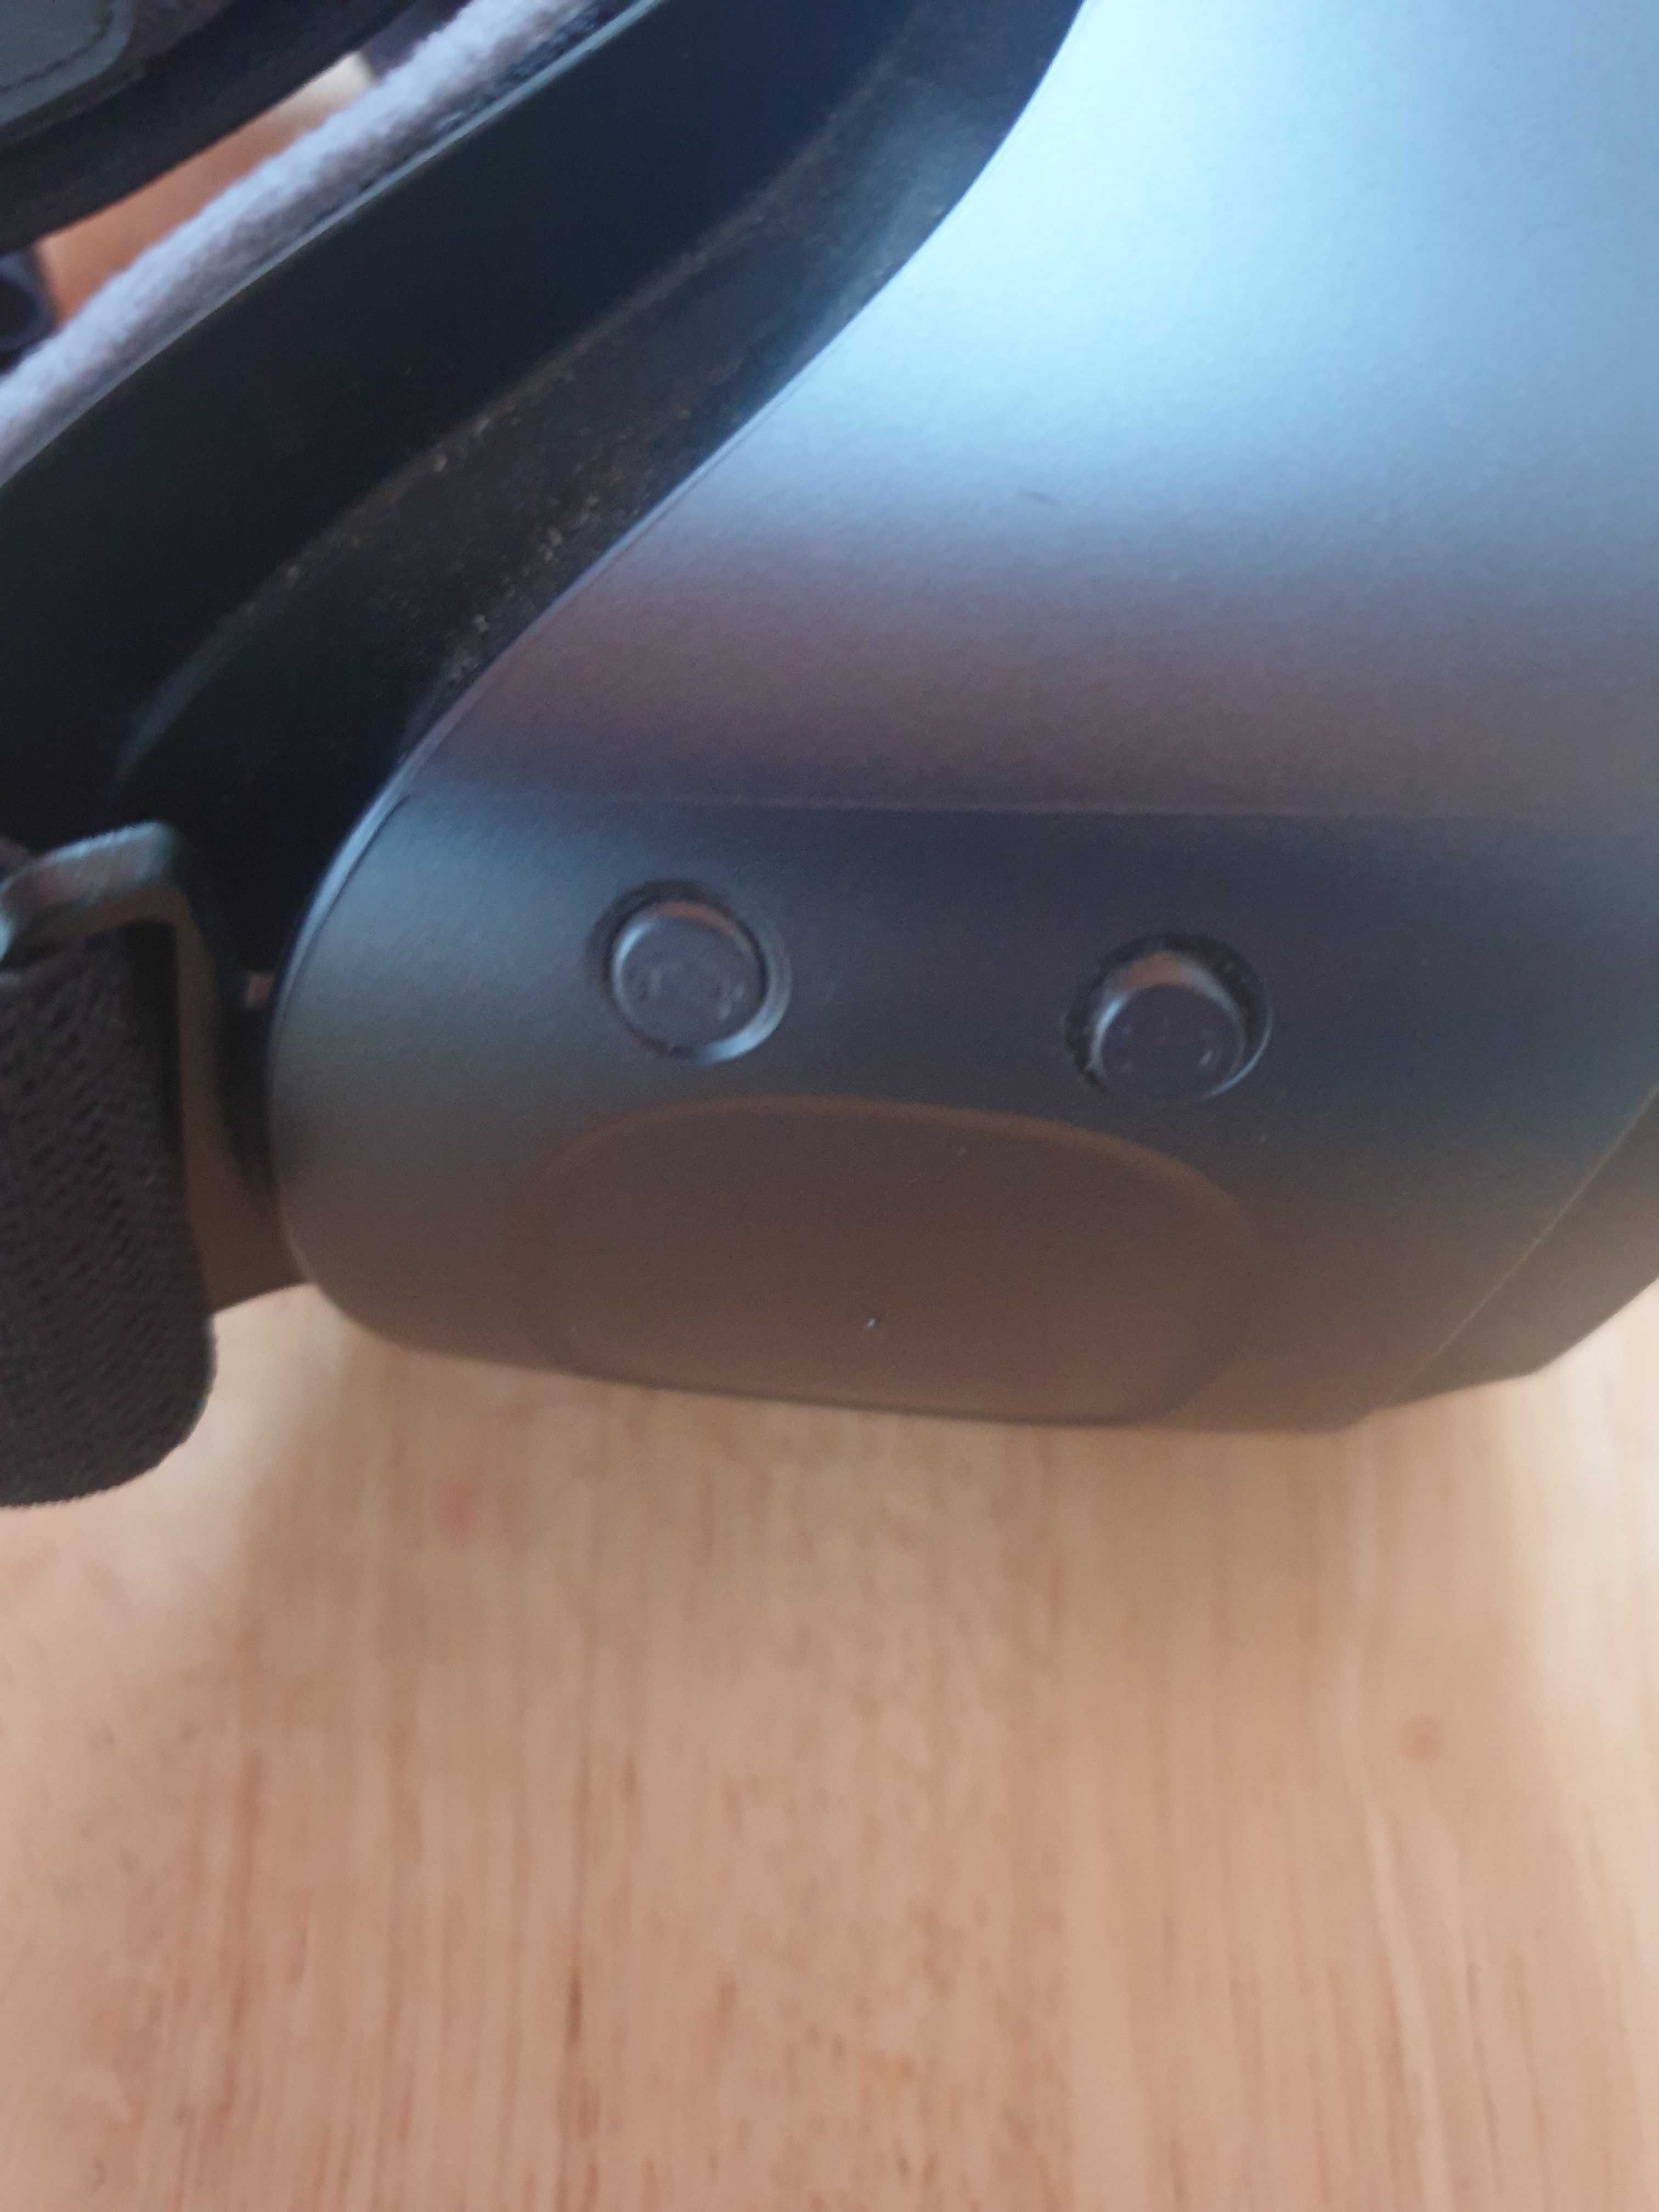 Samsung Gear VR Oculus 3D headset